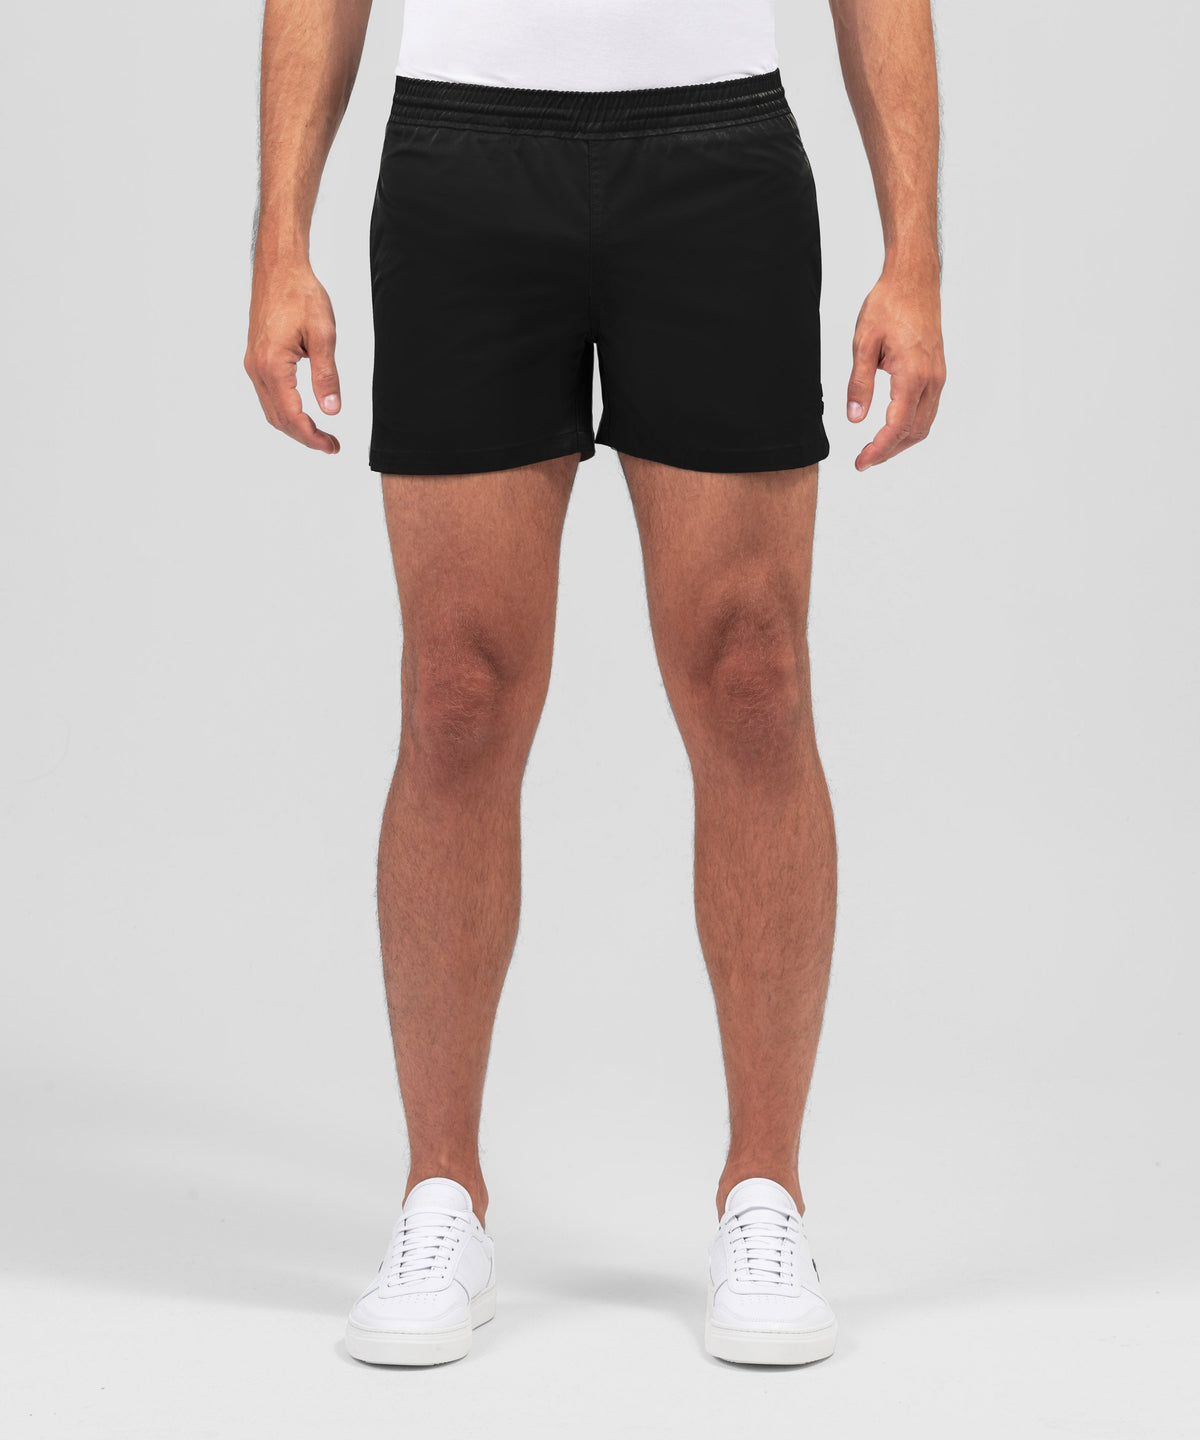 Exerciser Shorts: Black